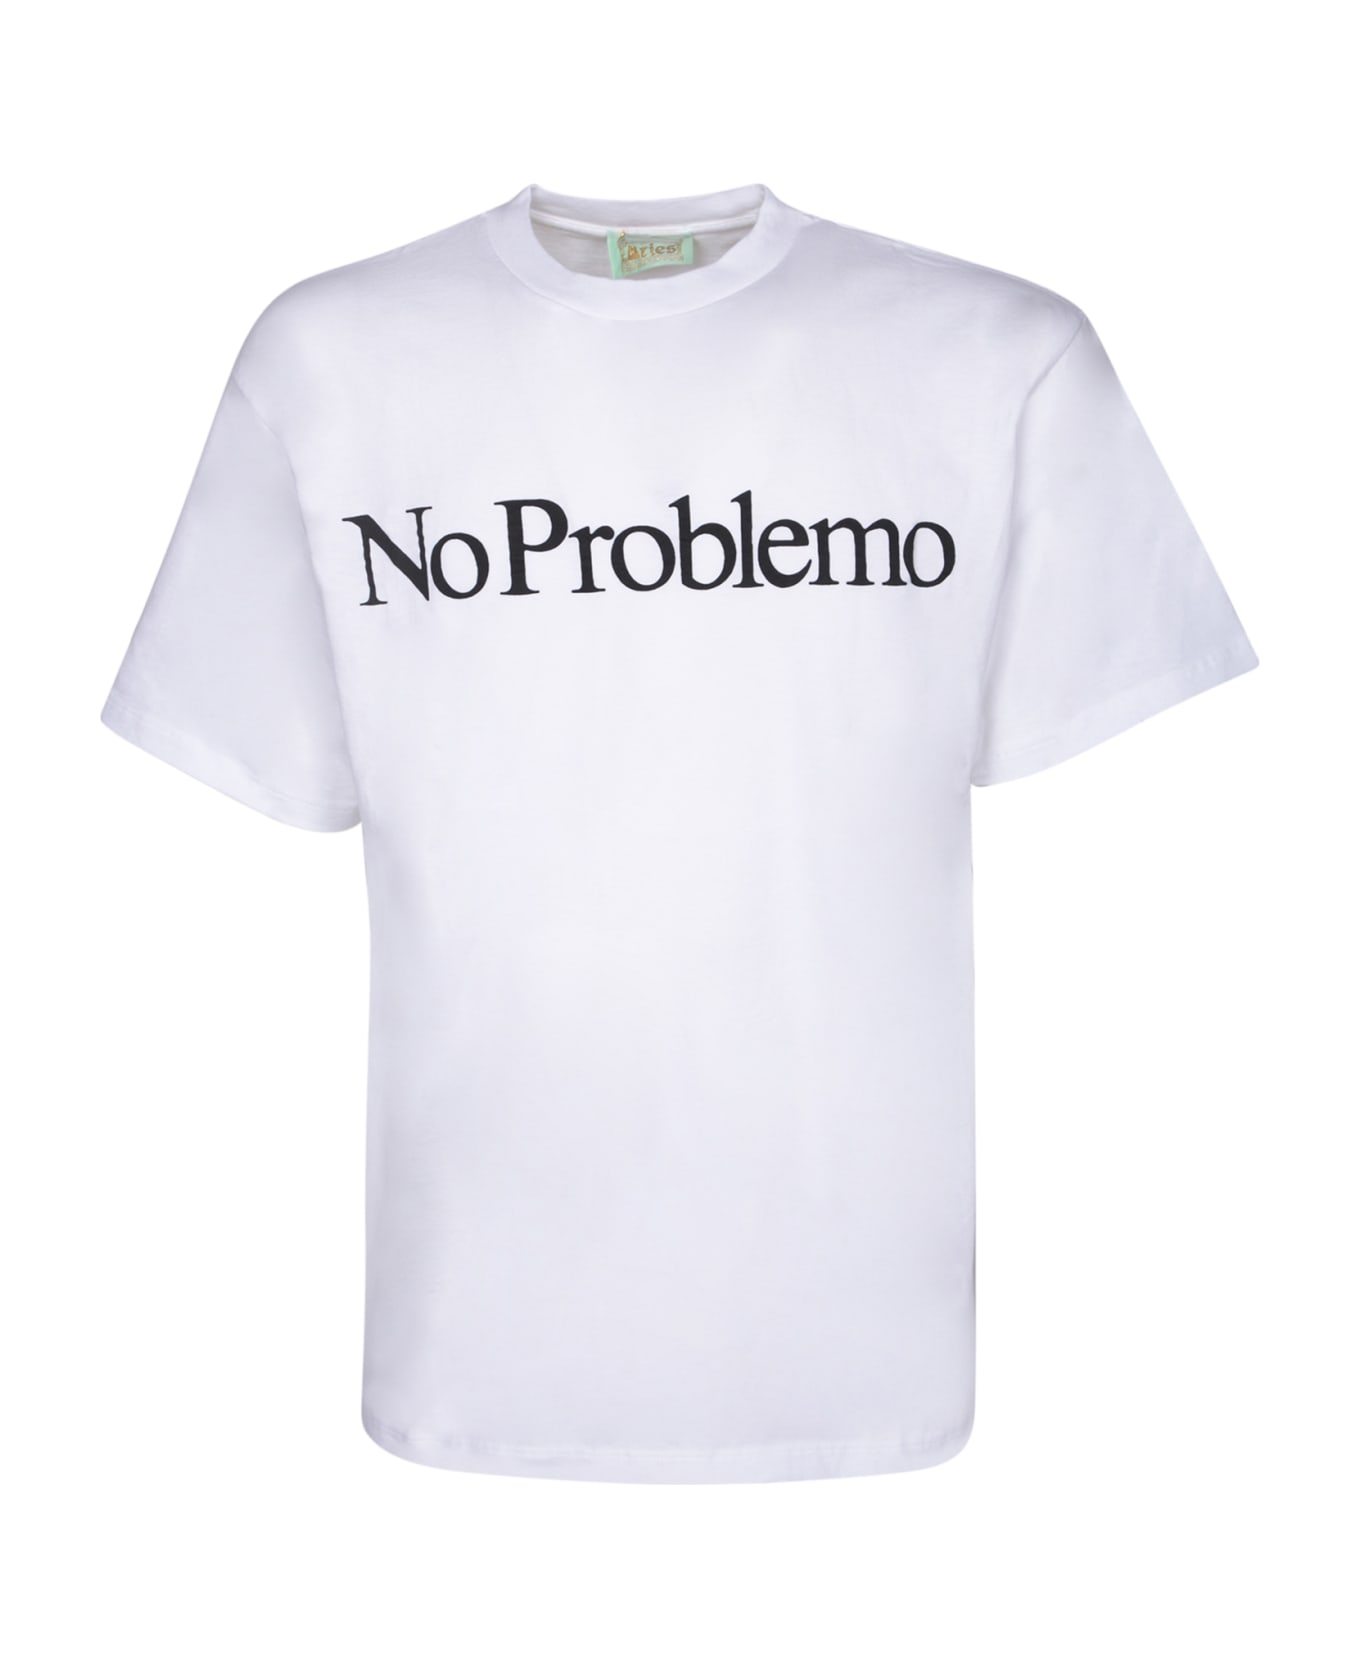 Aries No Problemo T-shirt - White シャツ